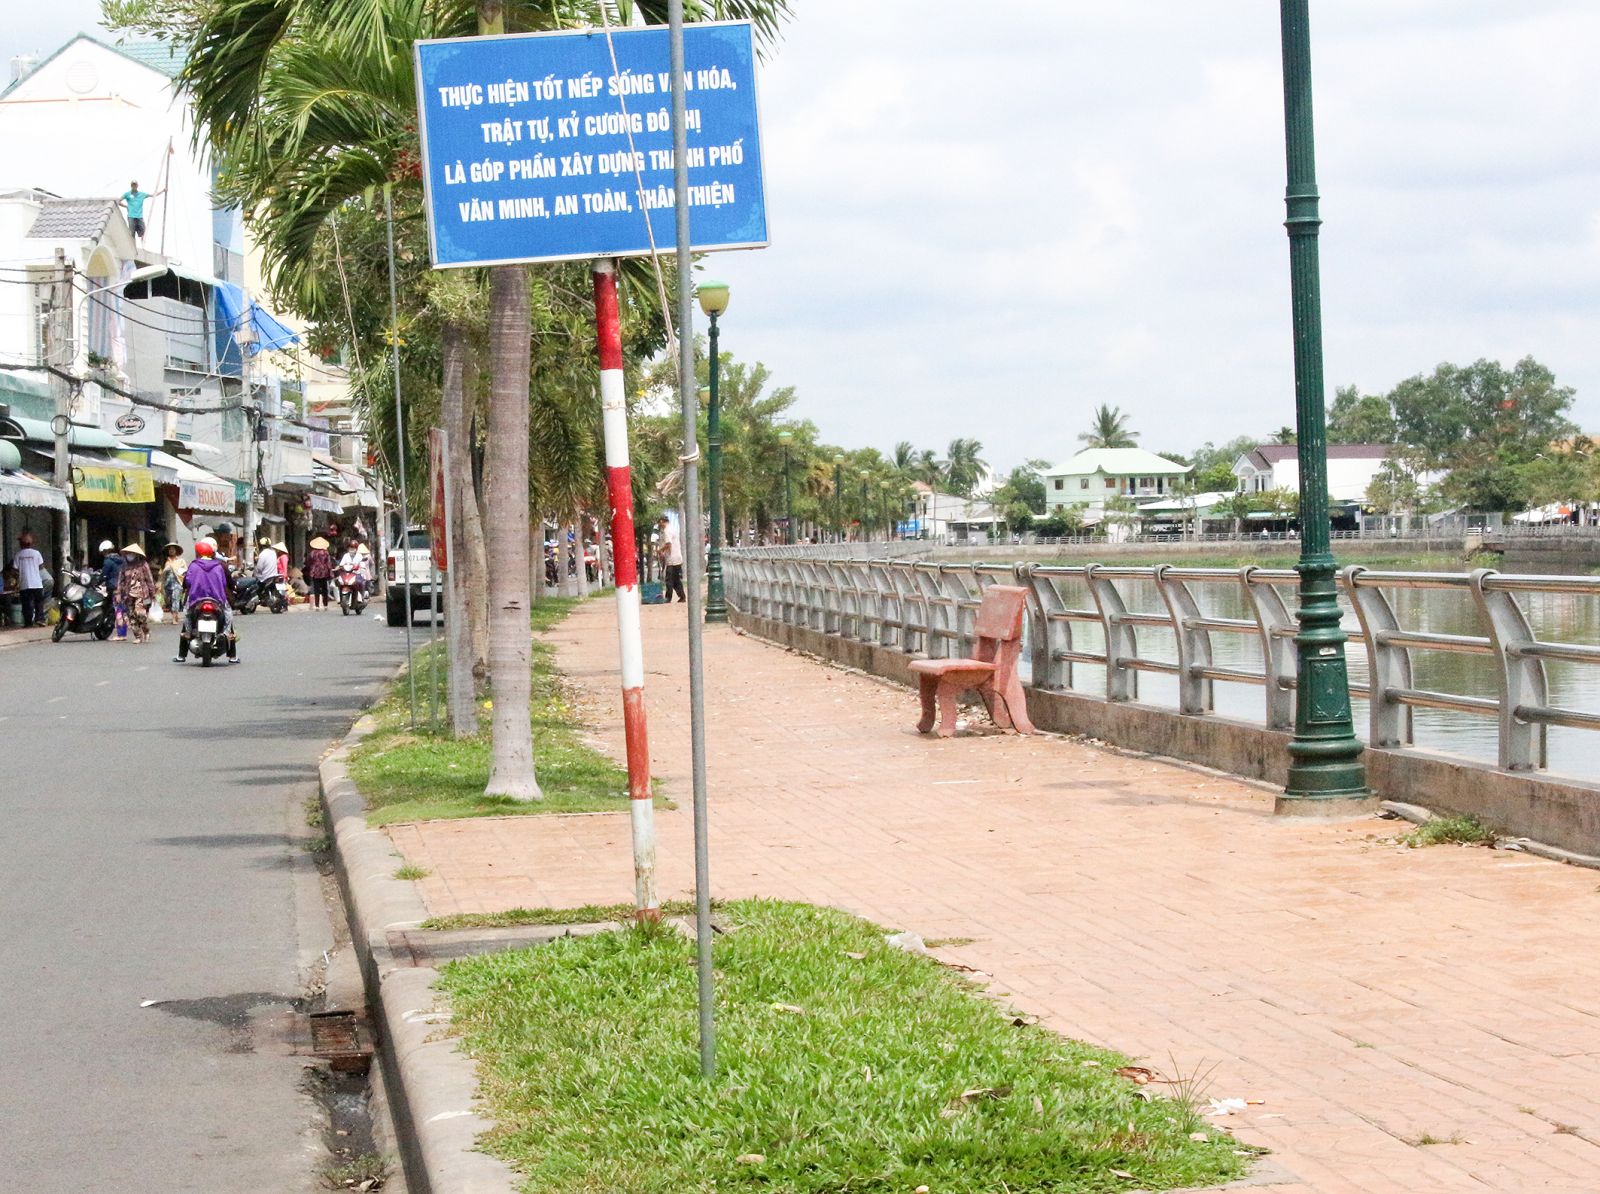 Bờ kè Rạch Cái Khế (đường Huỳnh Thúc Kháng), phường An Nghiệp xây dựng hoàn thành, hạn chế sạt lở, bảo vệ môi trường, phát triển đô thị thích ứng BĐKH.